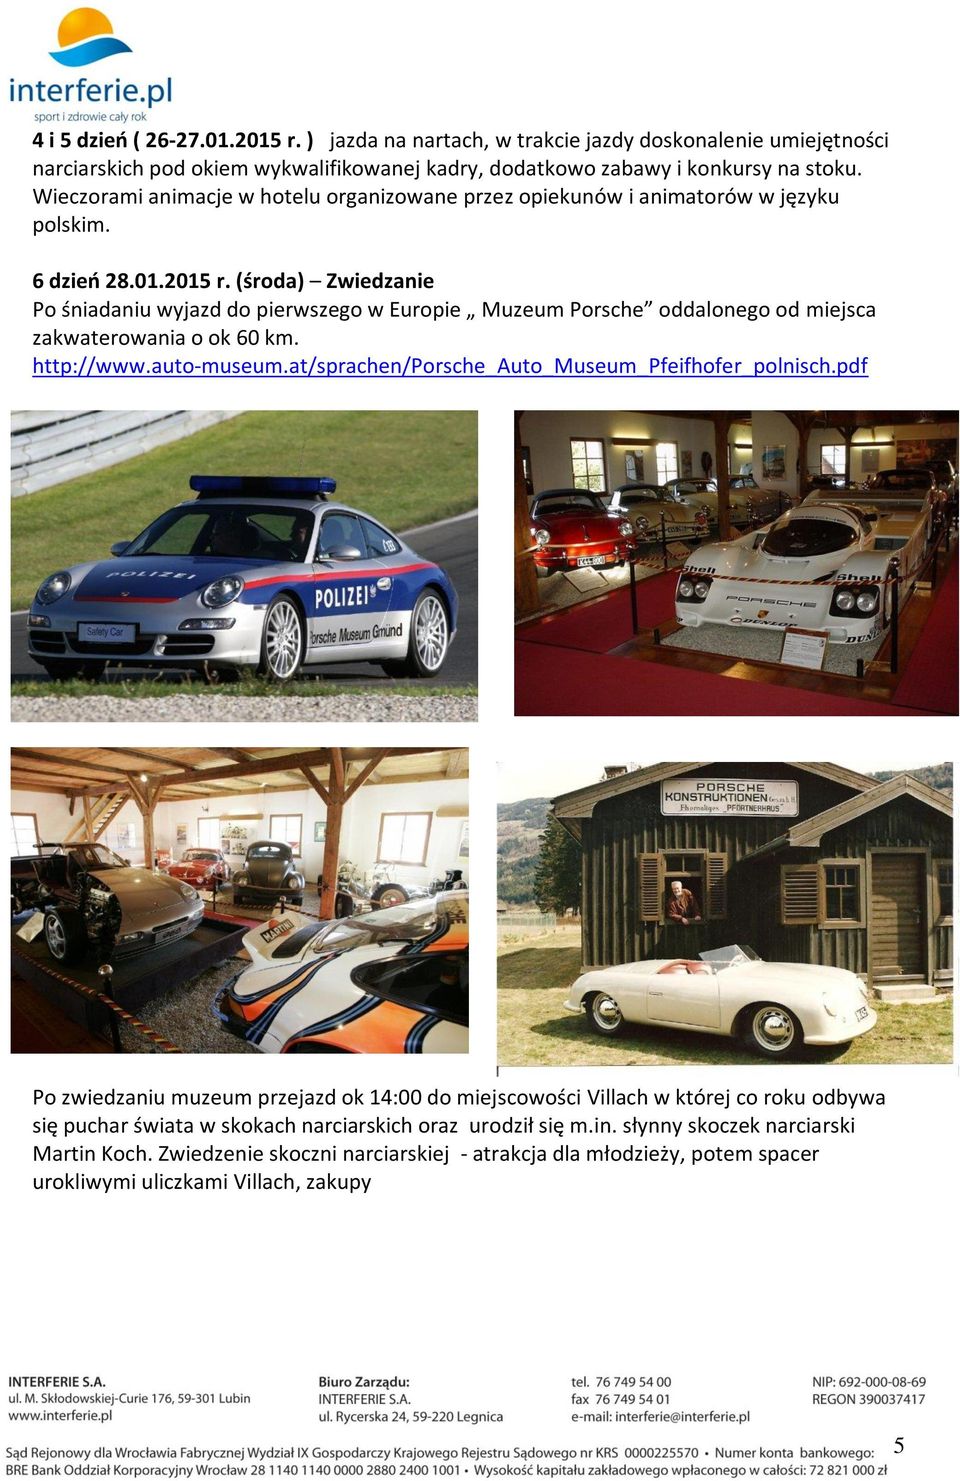 (środa) Zwiedzanie Po śniadaniu wyjazd do pierwszego w Europie Muzeum Porsche oddalonego od miejsca zakwaterowania o ok 60 km. http://www.auto-museum.